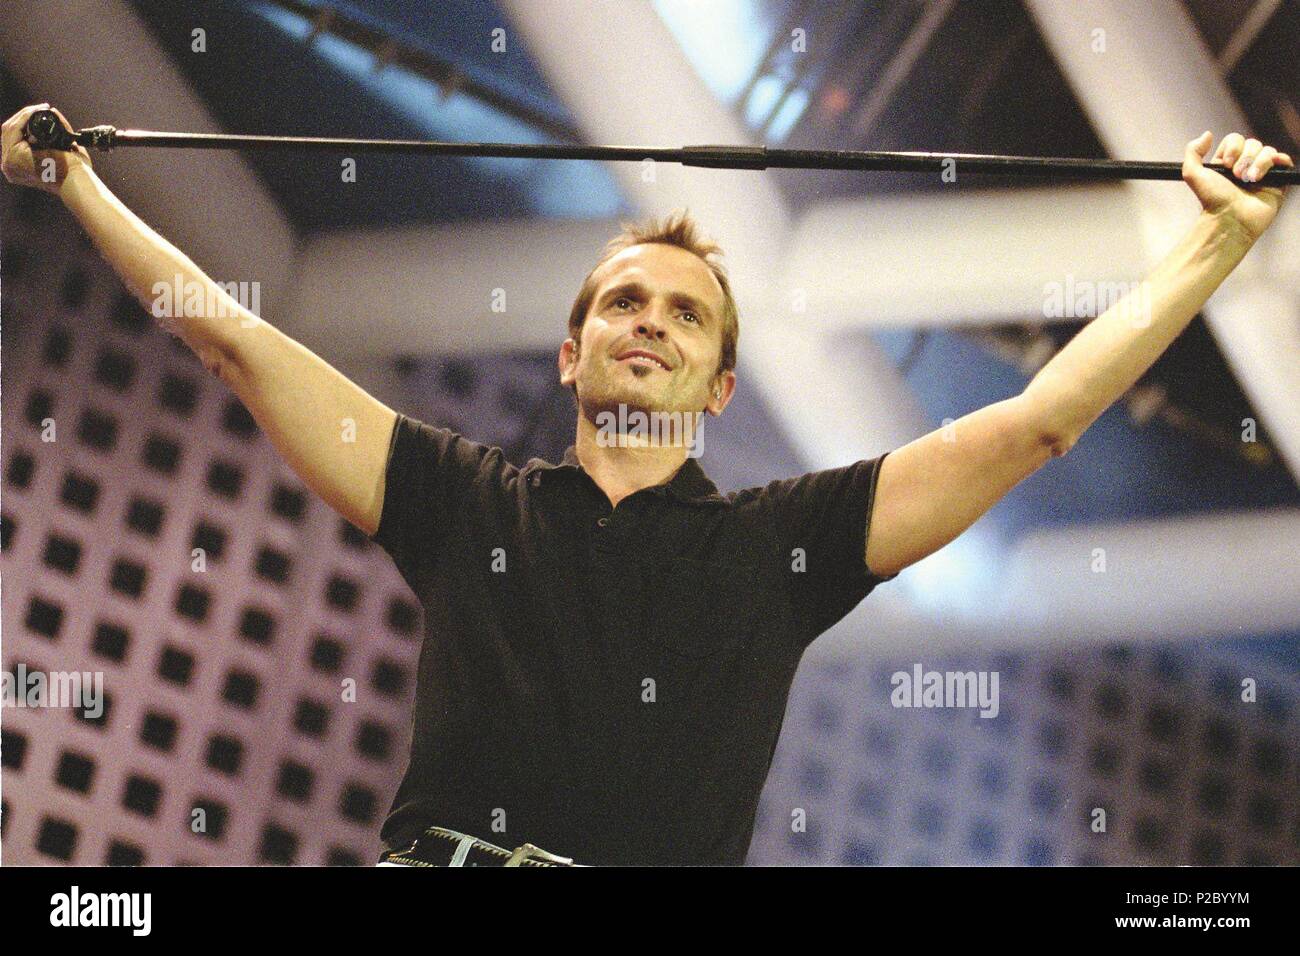 Miguel Bose en concierto, Barcelona 10/09/2002 Stock Photo - Alamy